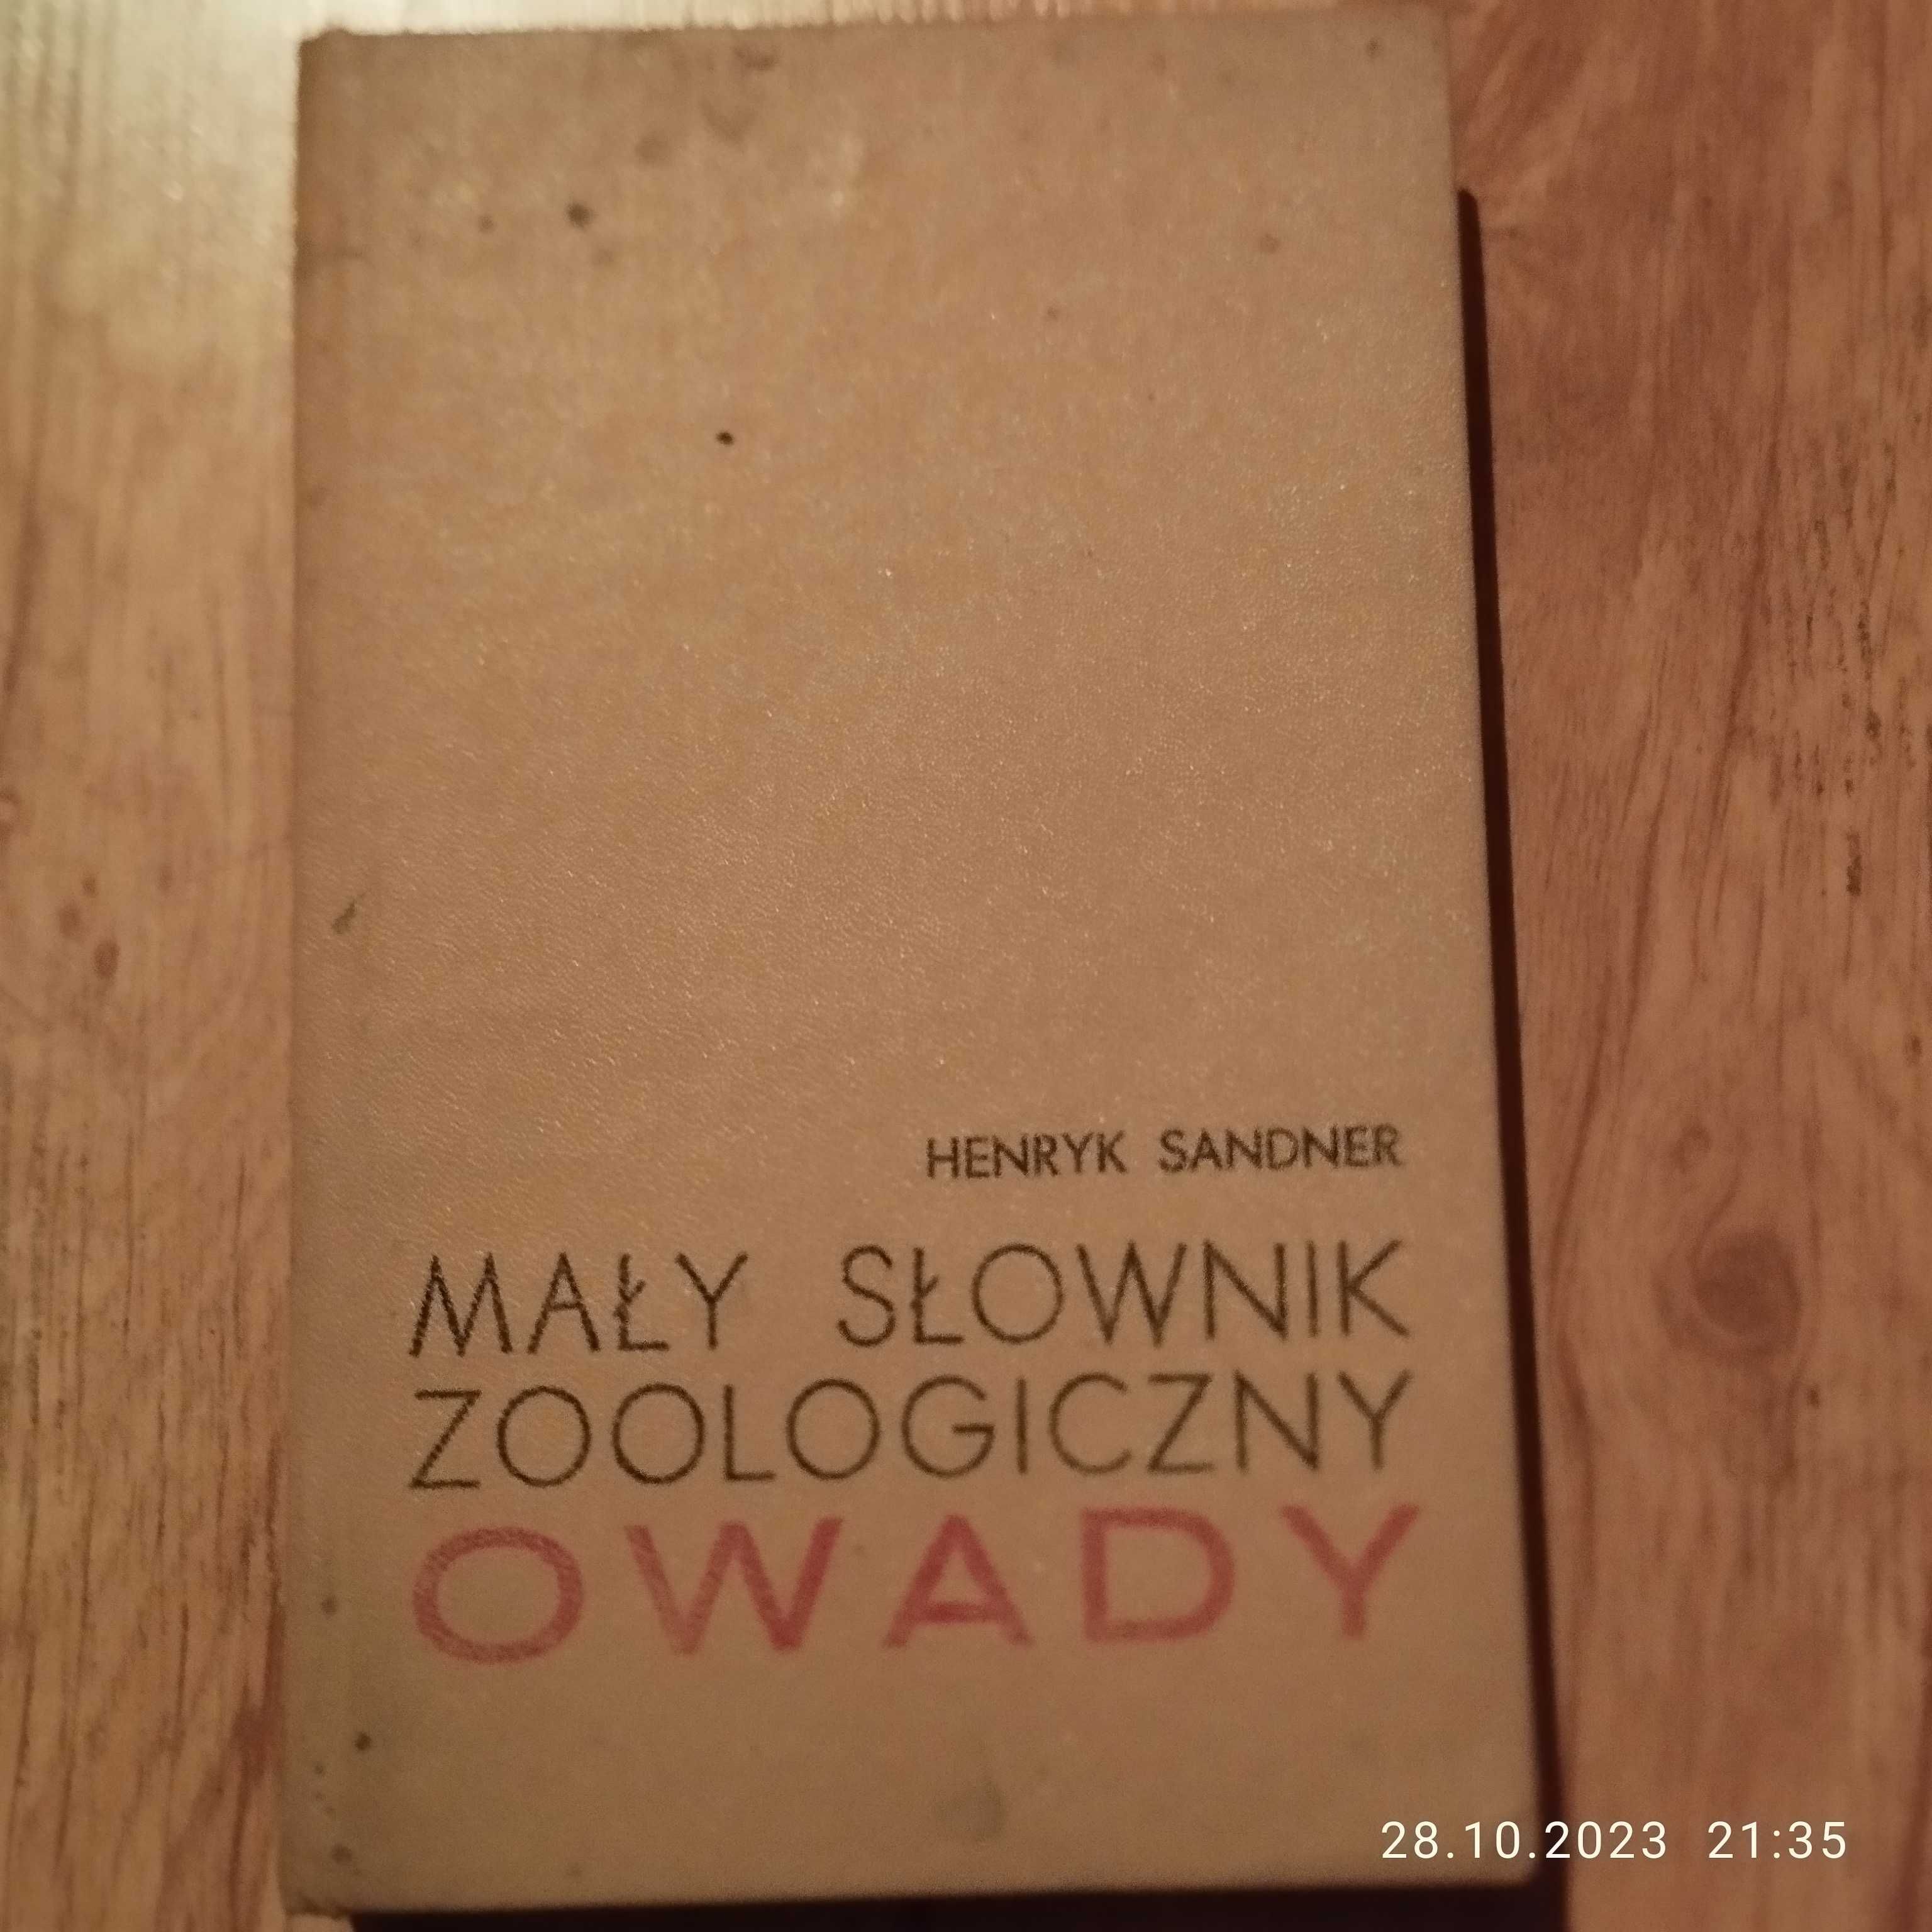 Owady - mały słownik zoologiczny - Henryk Sandner